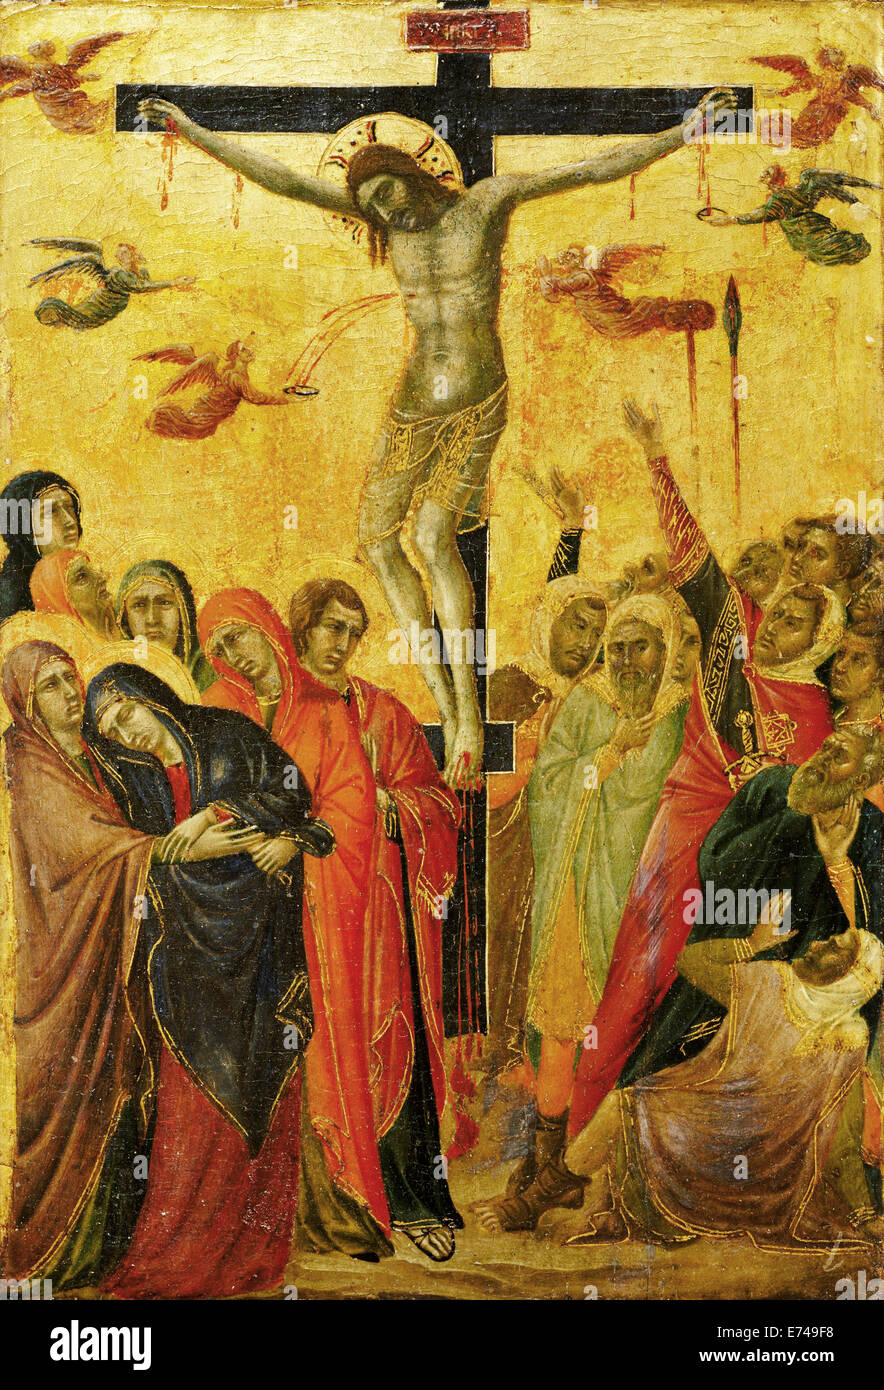 The Crucifixion - by Segna di Buonaventura, 1315 Stock Photo